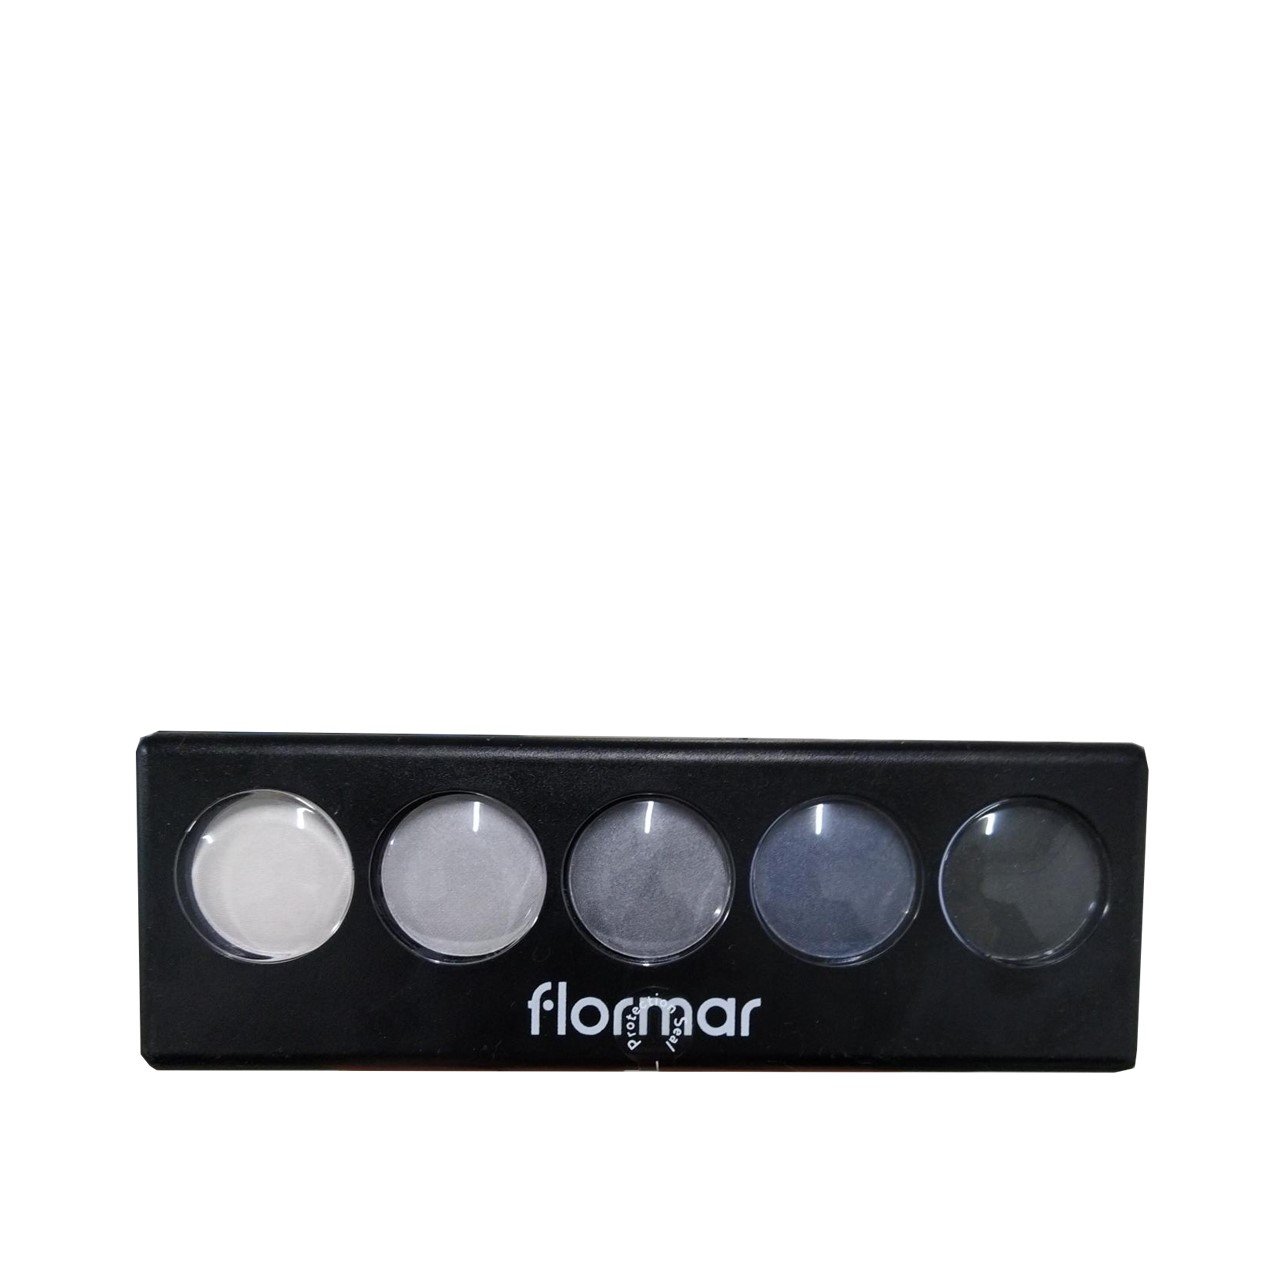 Flormar Color Palette Eyeshadow 05 Black Dust 9g